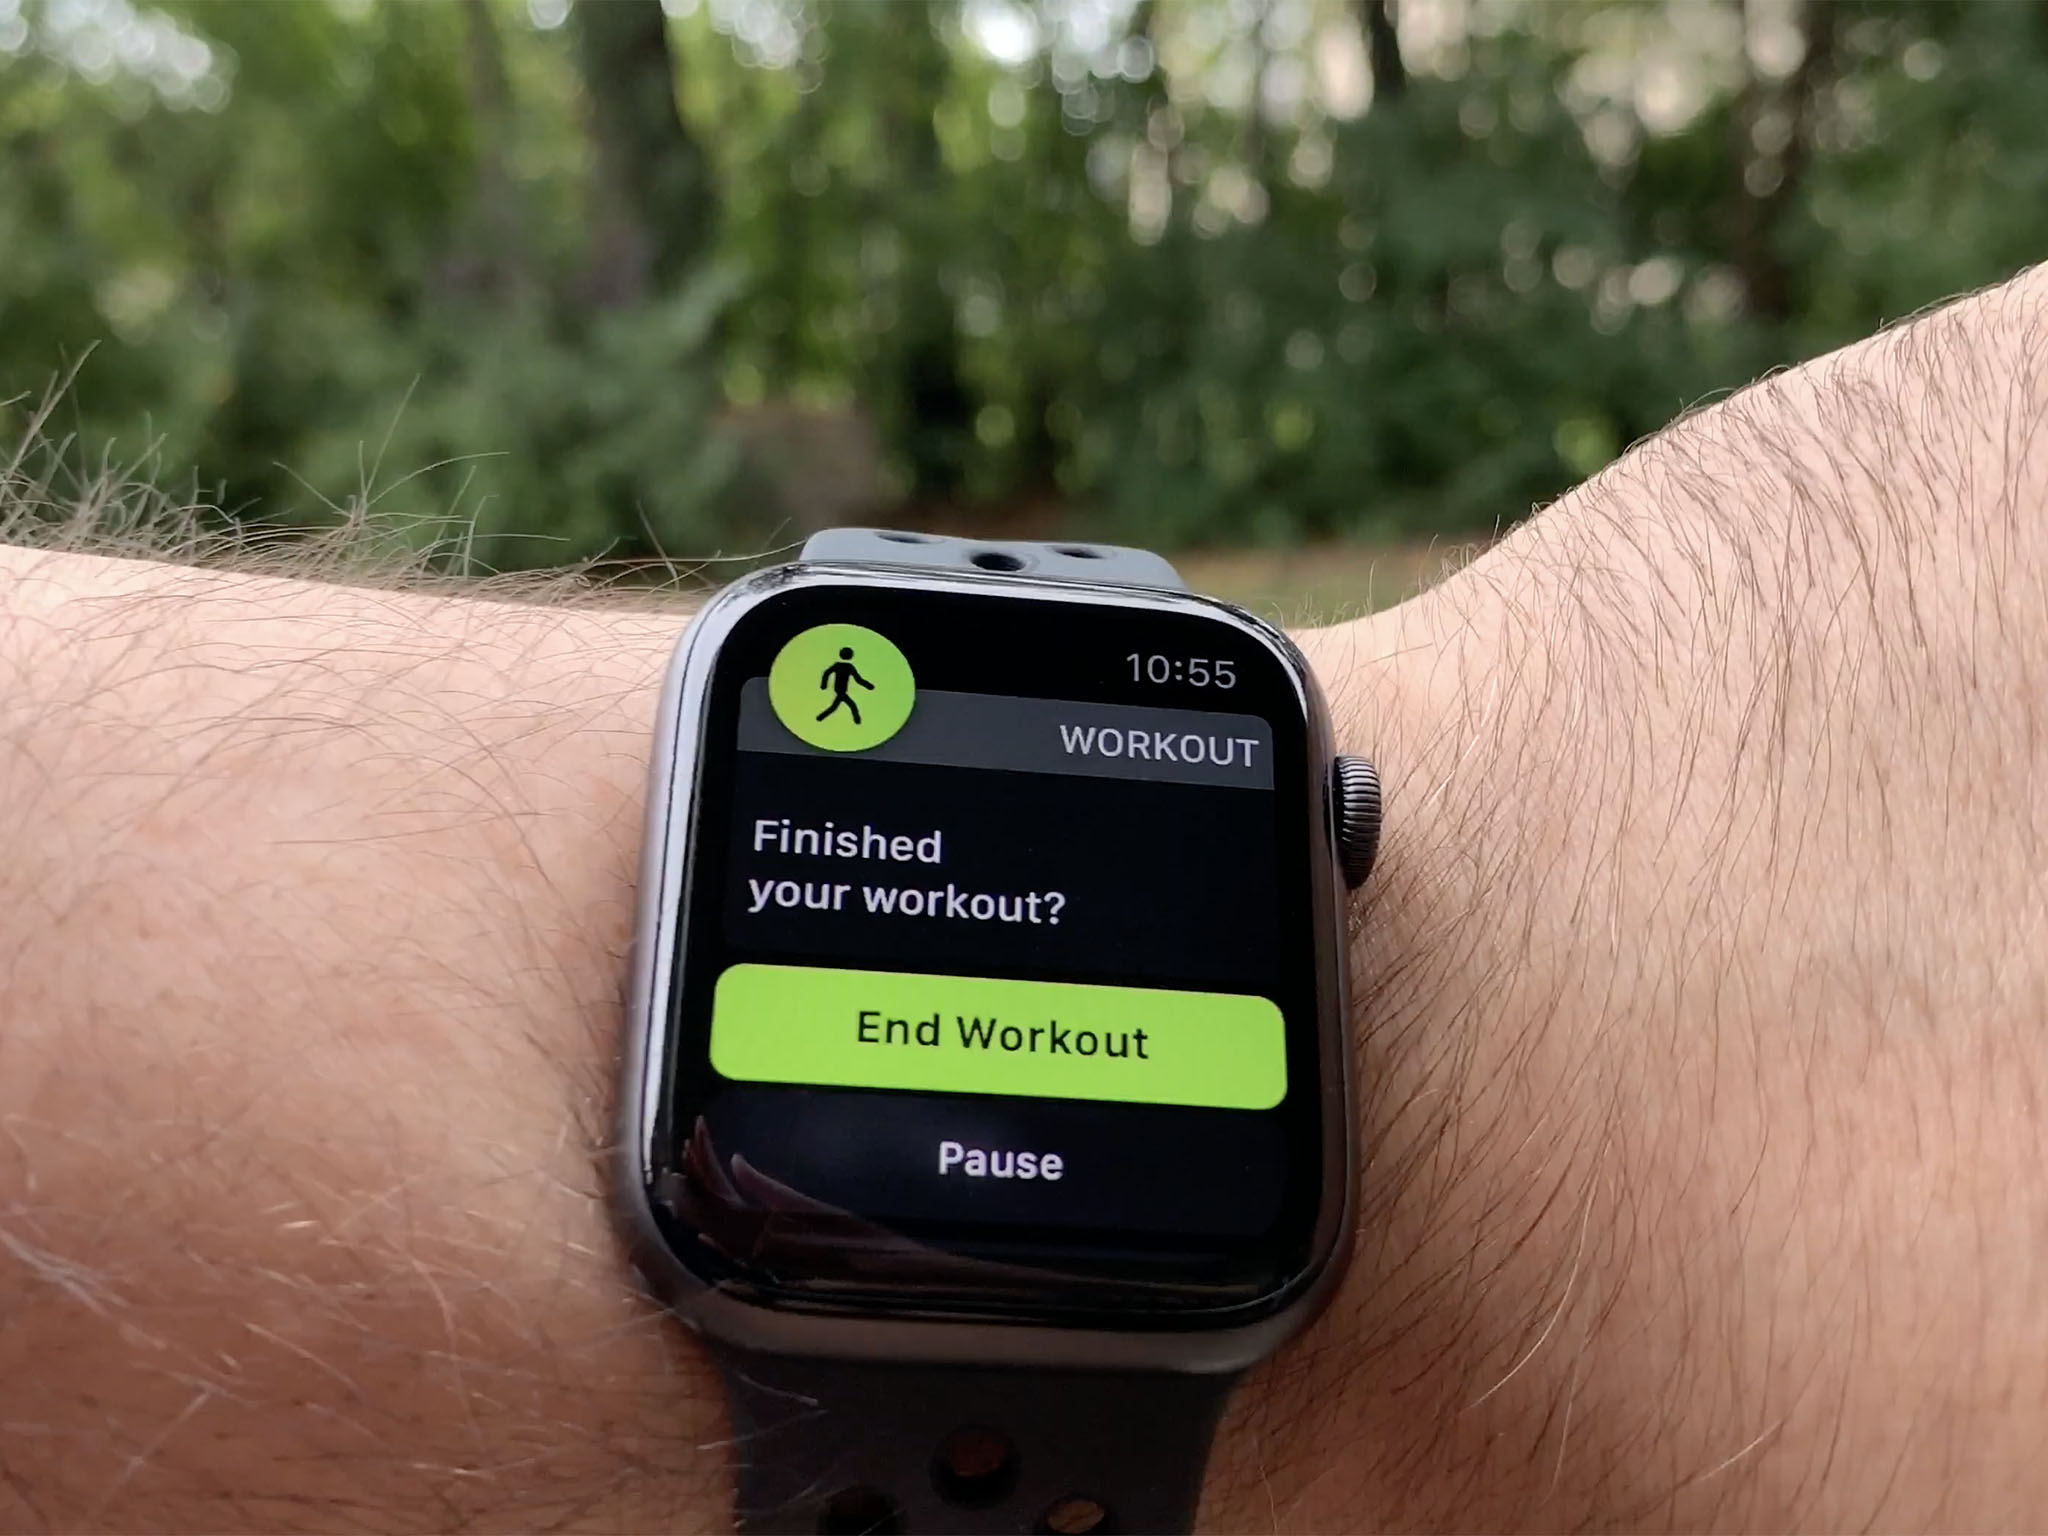 Apple Watch S4: автоматическое определение окончания тренировки